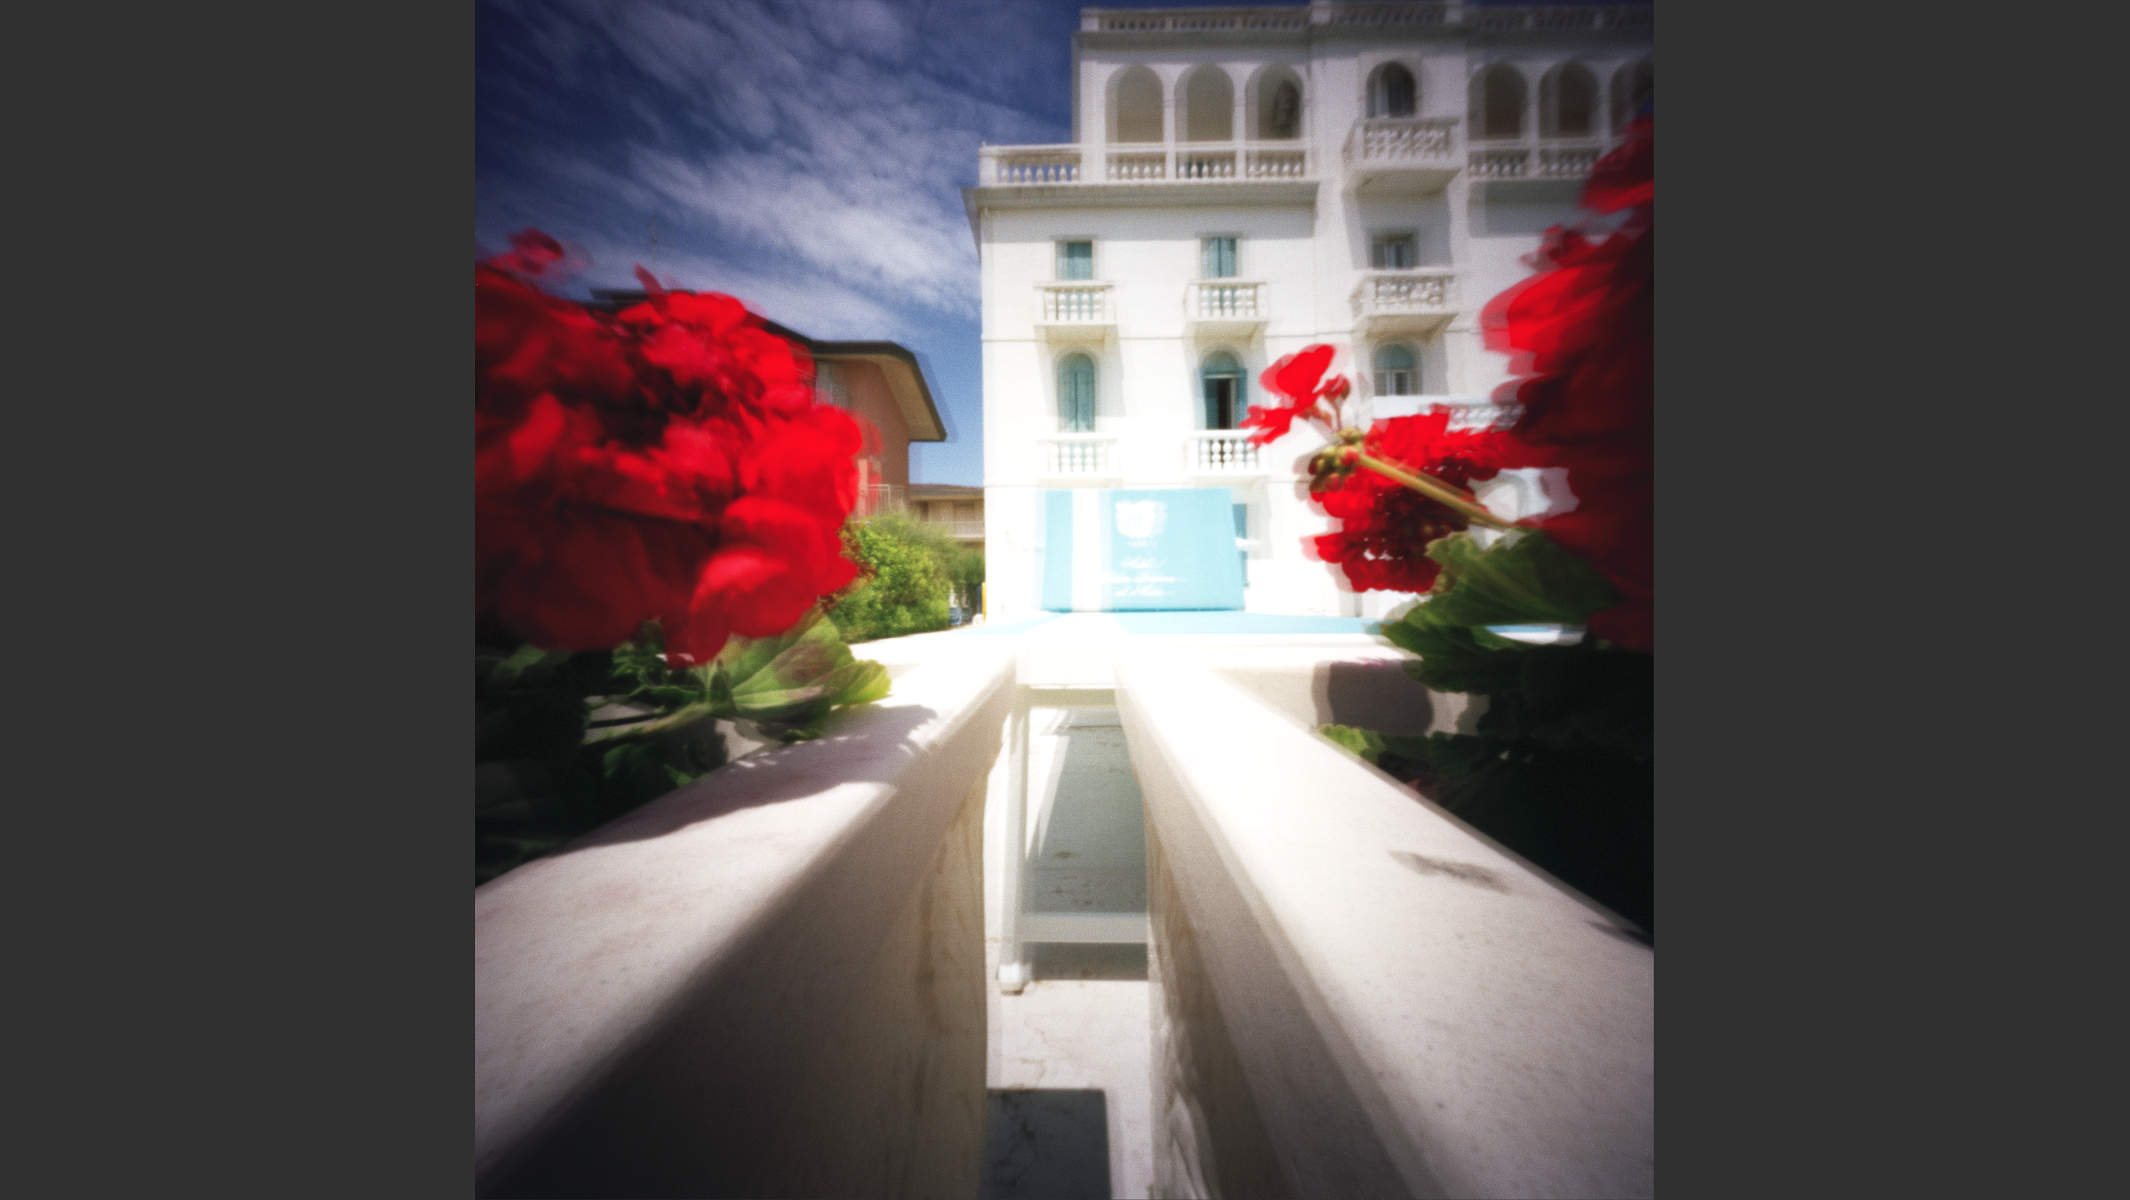 Lochkamera-Foto eines Strandhauses an der Adria mit roten Blumen. © Martin Geier